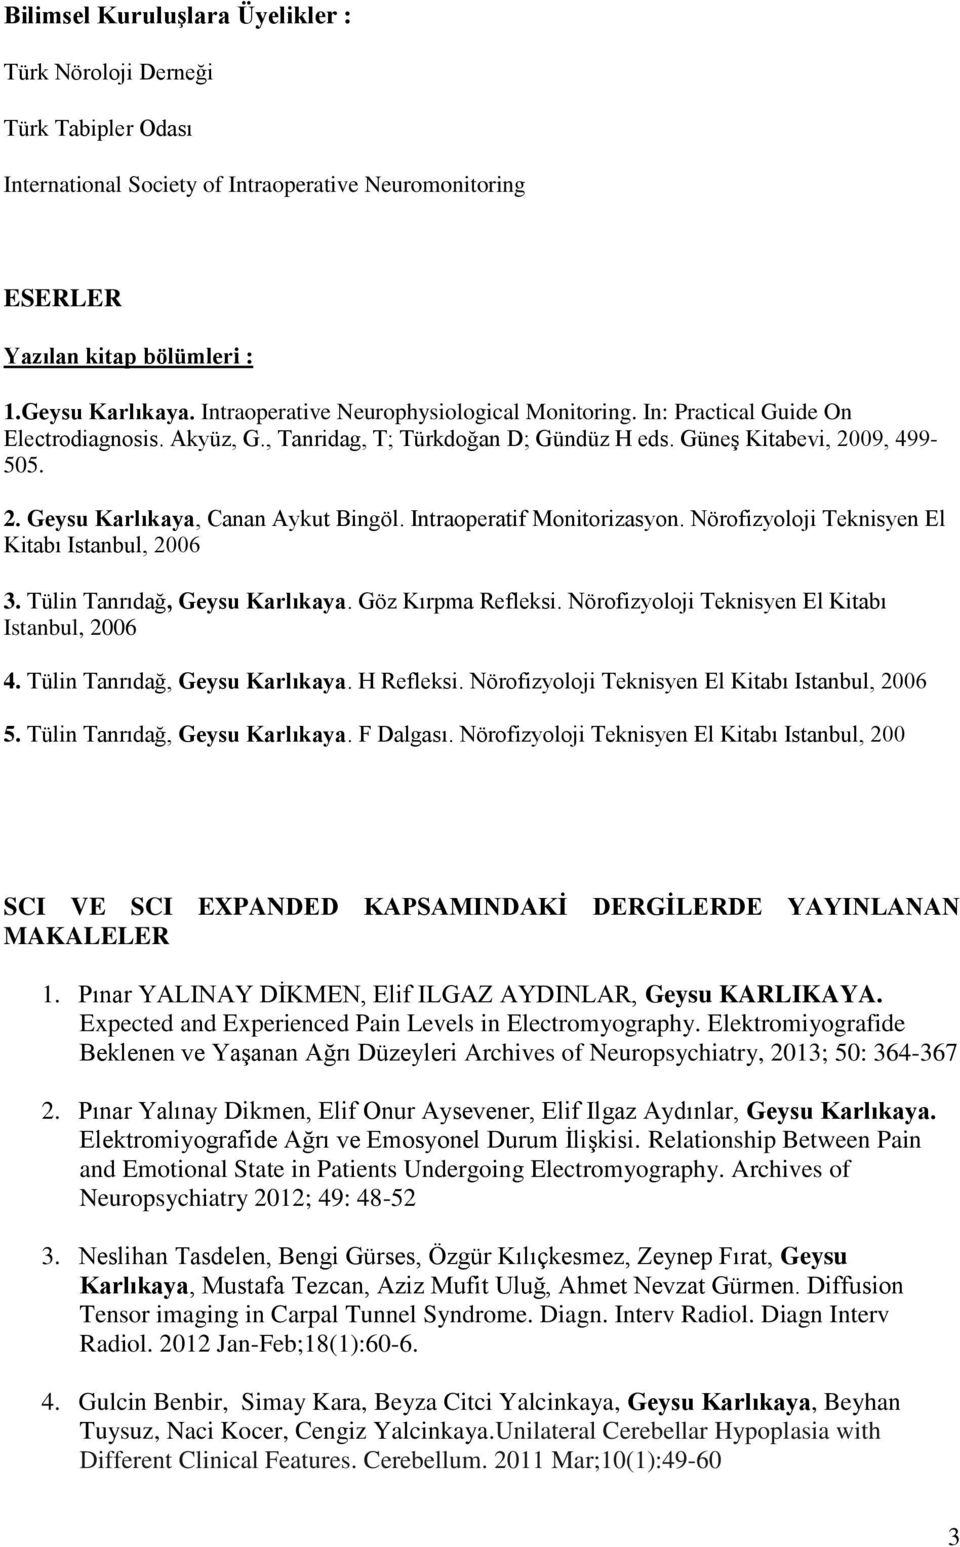 Intraoperatif Monitorizasyon. Nörofizyoloji Teknisyen El Kitabı Istanbul, 2006 3. Tülin Tanrıdağ, Geysu Karlıkaya. Göz Kırpma Refleksi. Nörofizyoloji Teknisyen El Kitabı Istanbul, 2006 4.